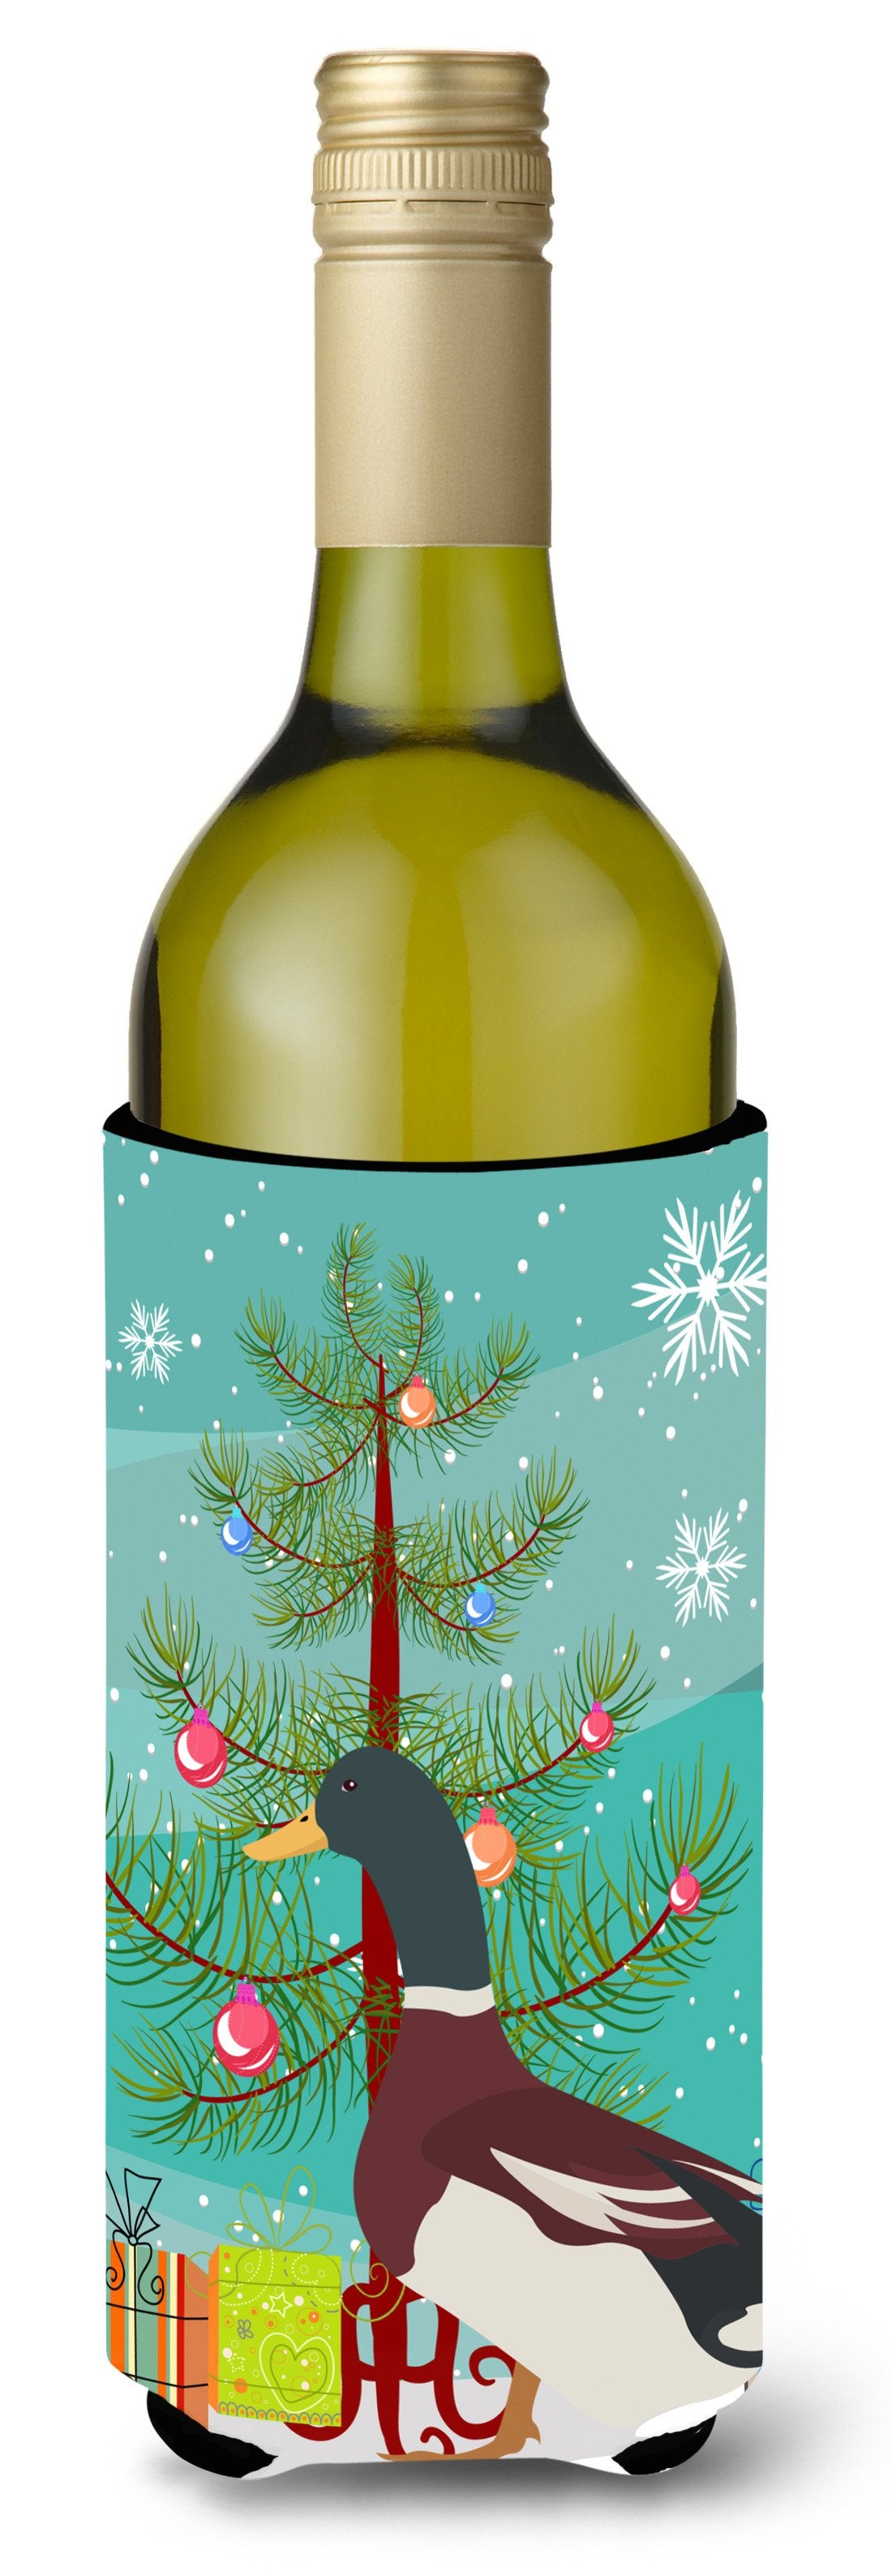 Rouen Duck Christmas Wine Bottle Beverge Insulator Hugger BB9223LITERK by Caroline's Treasures